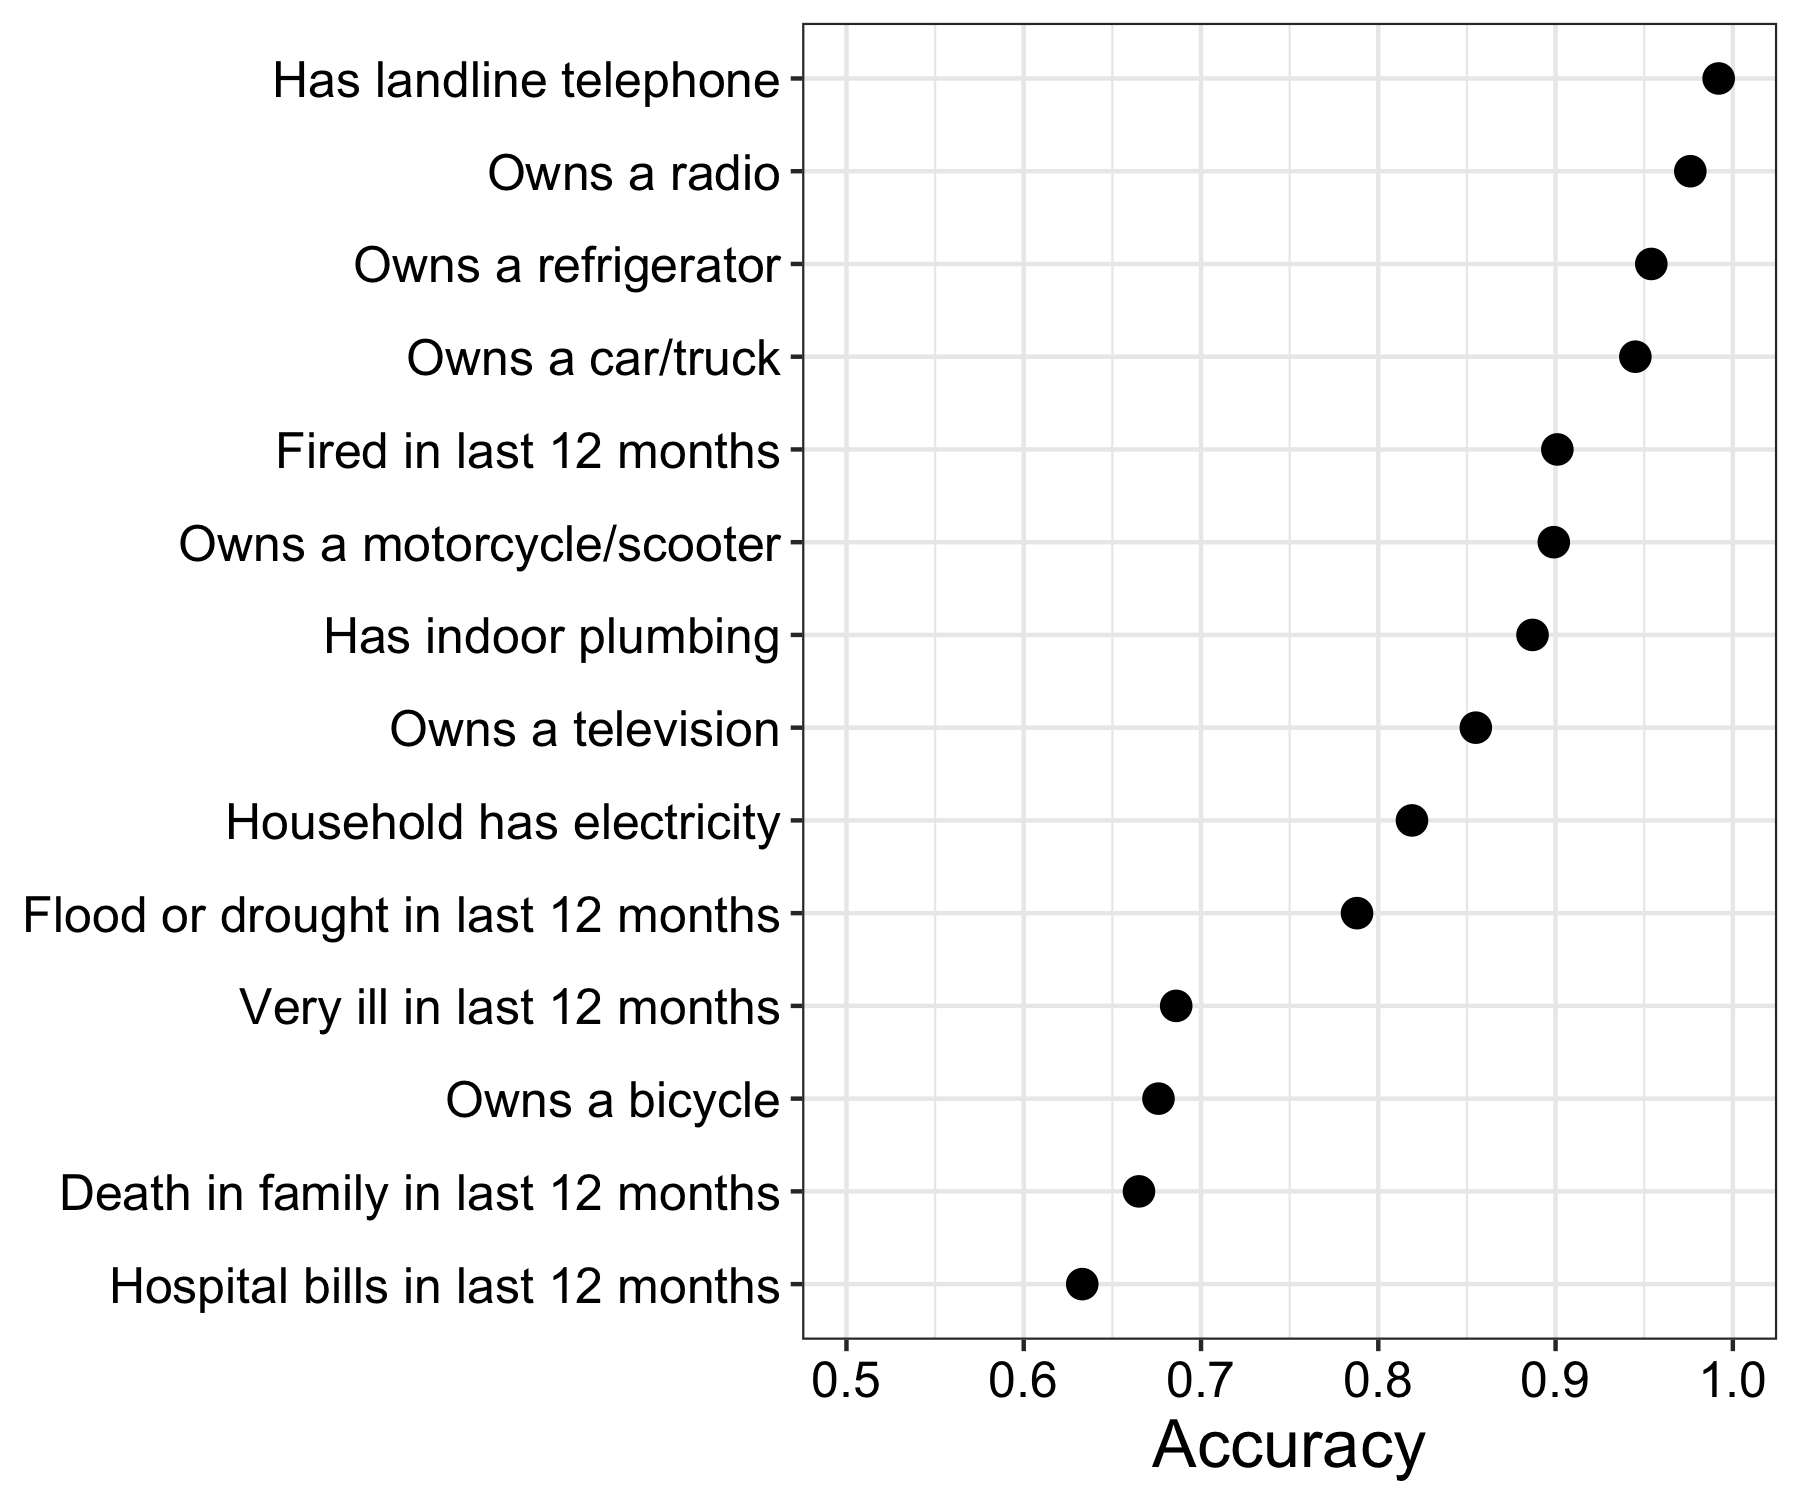 Gambar 3.14: Prediktifitas akurasi kanggo model statistik dilatih karo rekaman telpon. Diadaptasi saka Blumenstock (2014), Tabel 2.